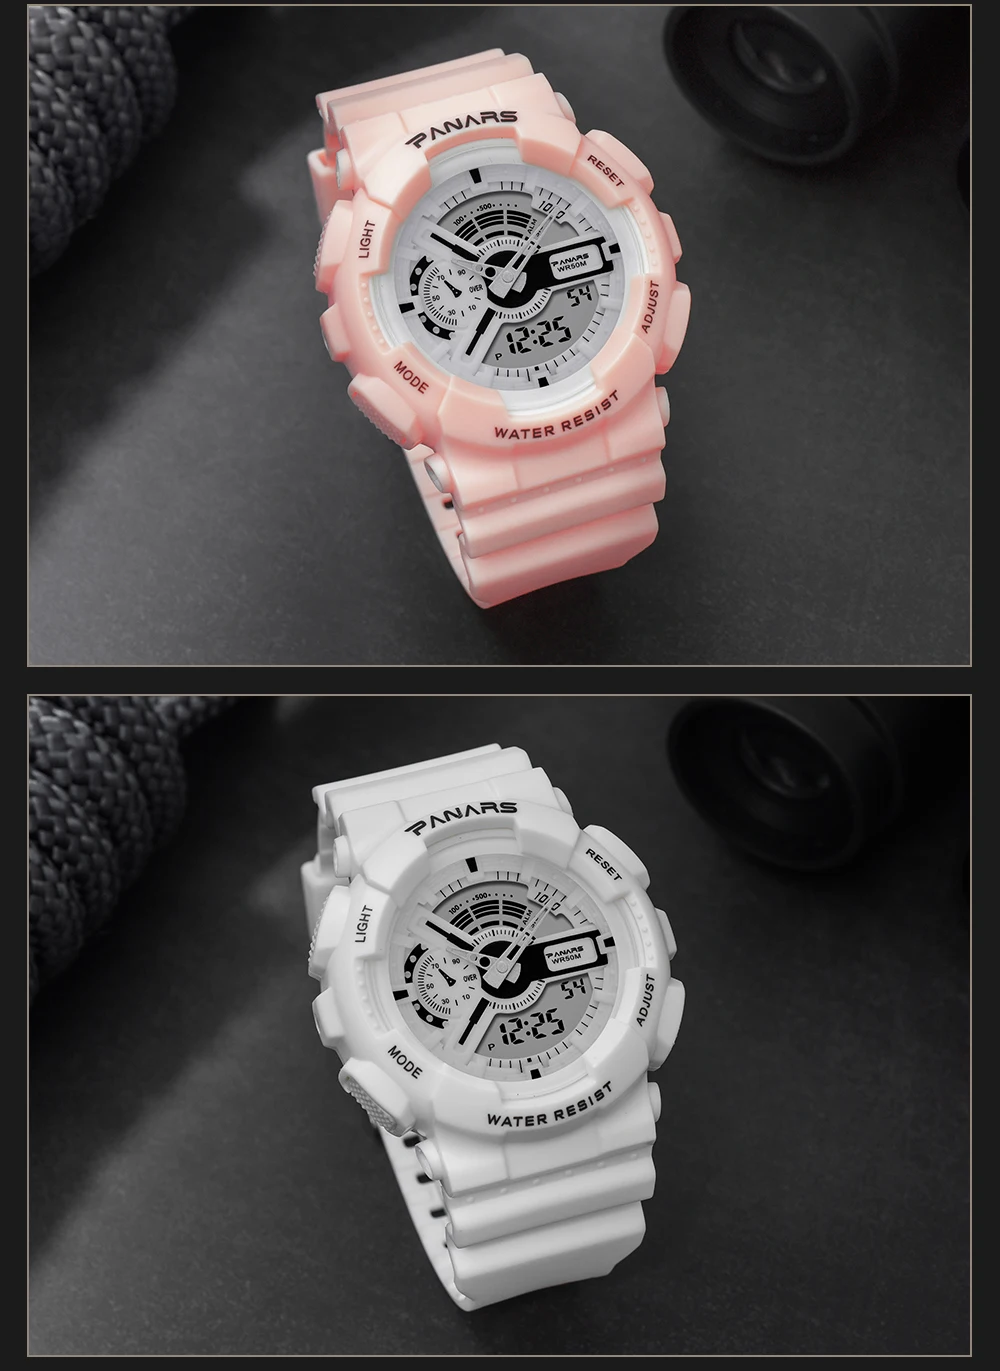 Relogio Feminino, цифровые женские спортивные часы, водонепроницаемые, для женщин, светодиодный, для фитнеса, электронные наручные часы для женщин, мужчин, девушек, наручные часы